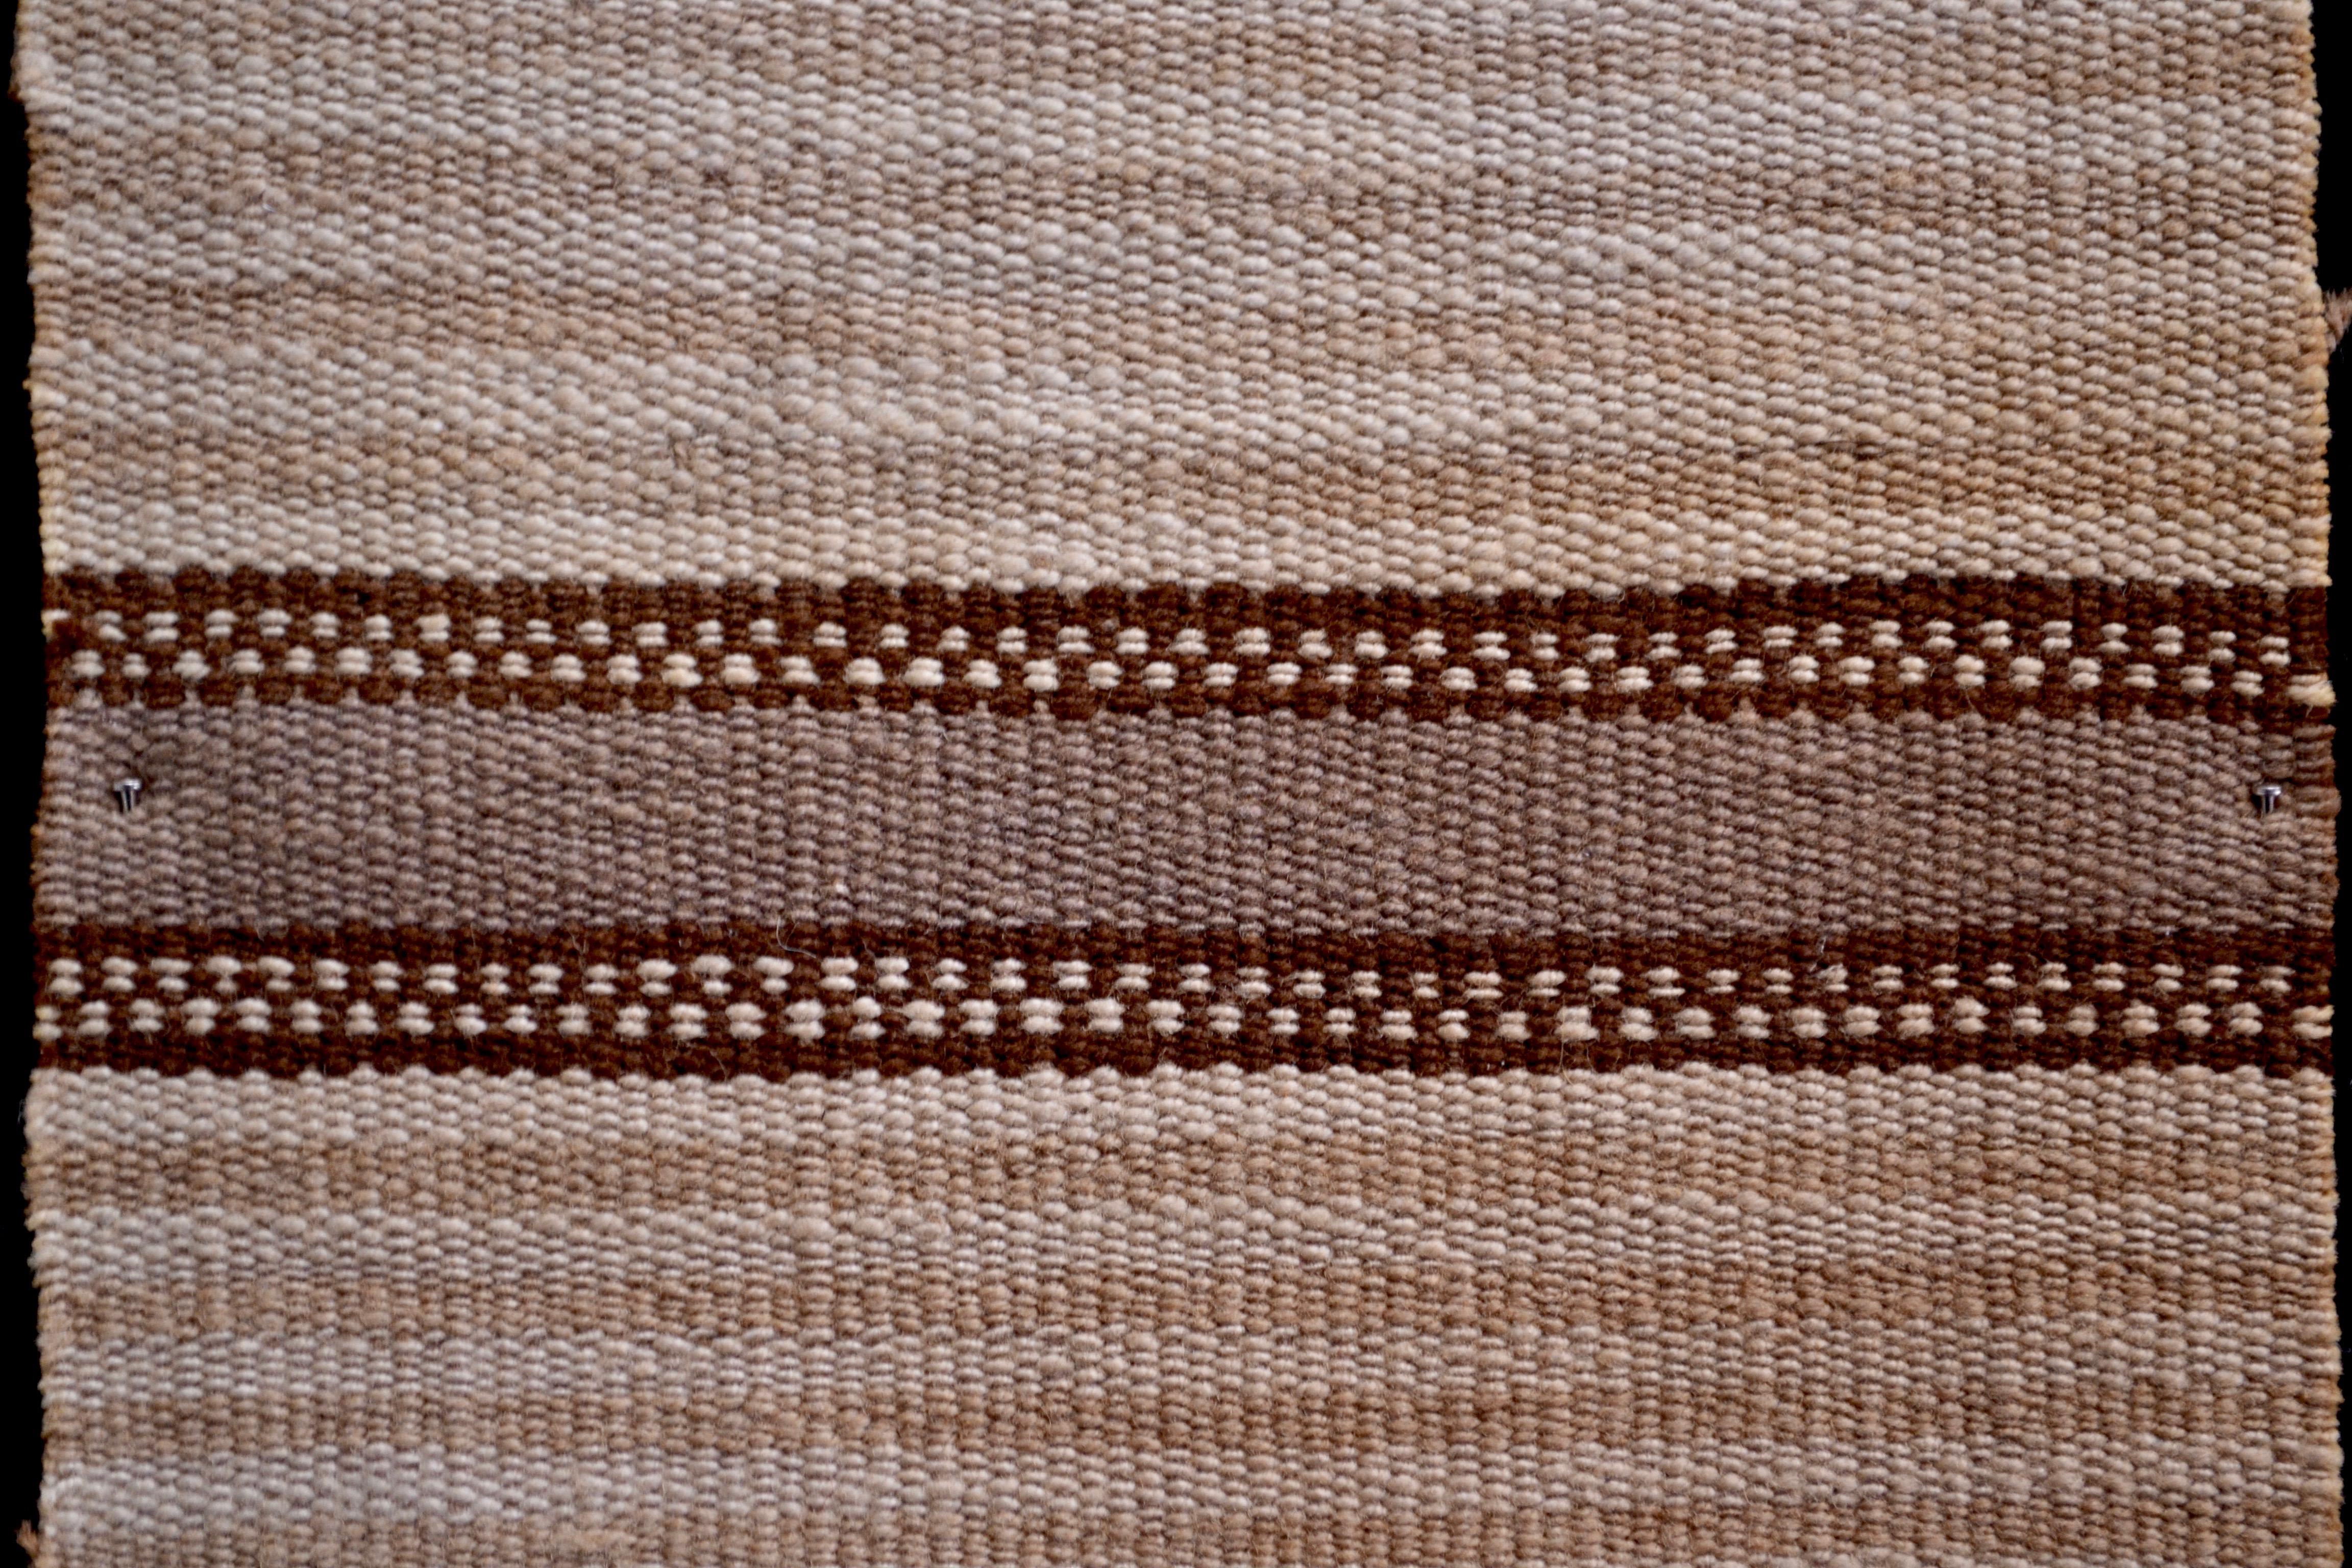 Peruvian Striped Inca Pre-Columbian Textile, Peru, circa 1400-1532 AD, Ex Ferdinand Anton For Sale